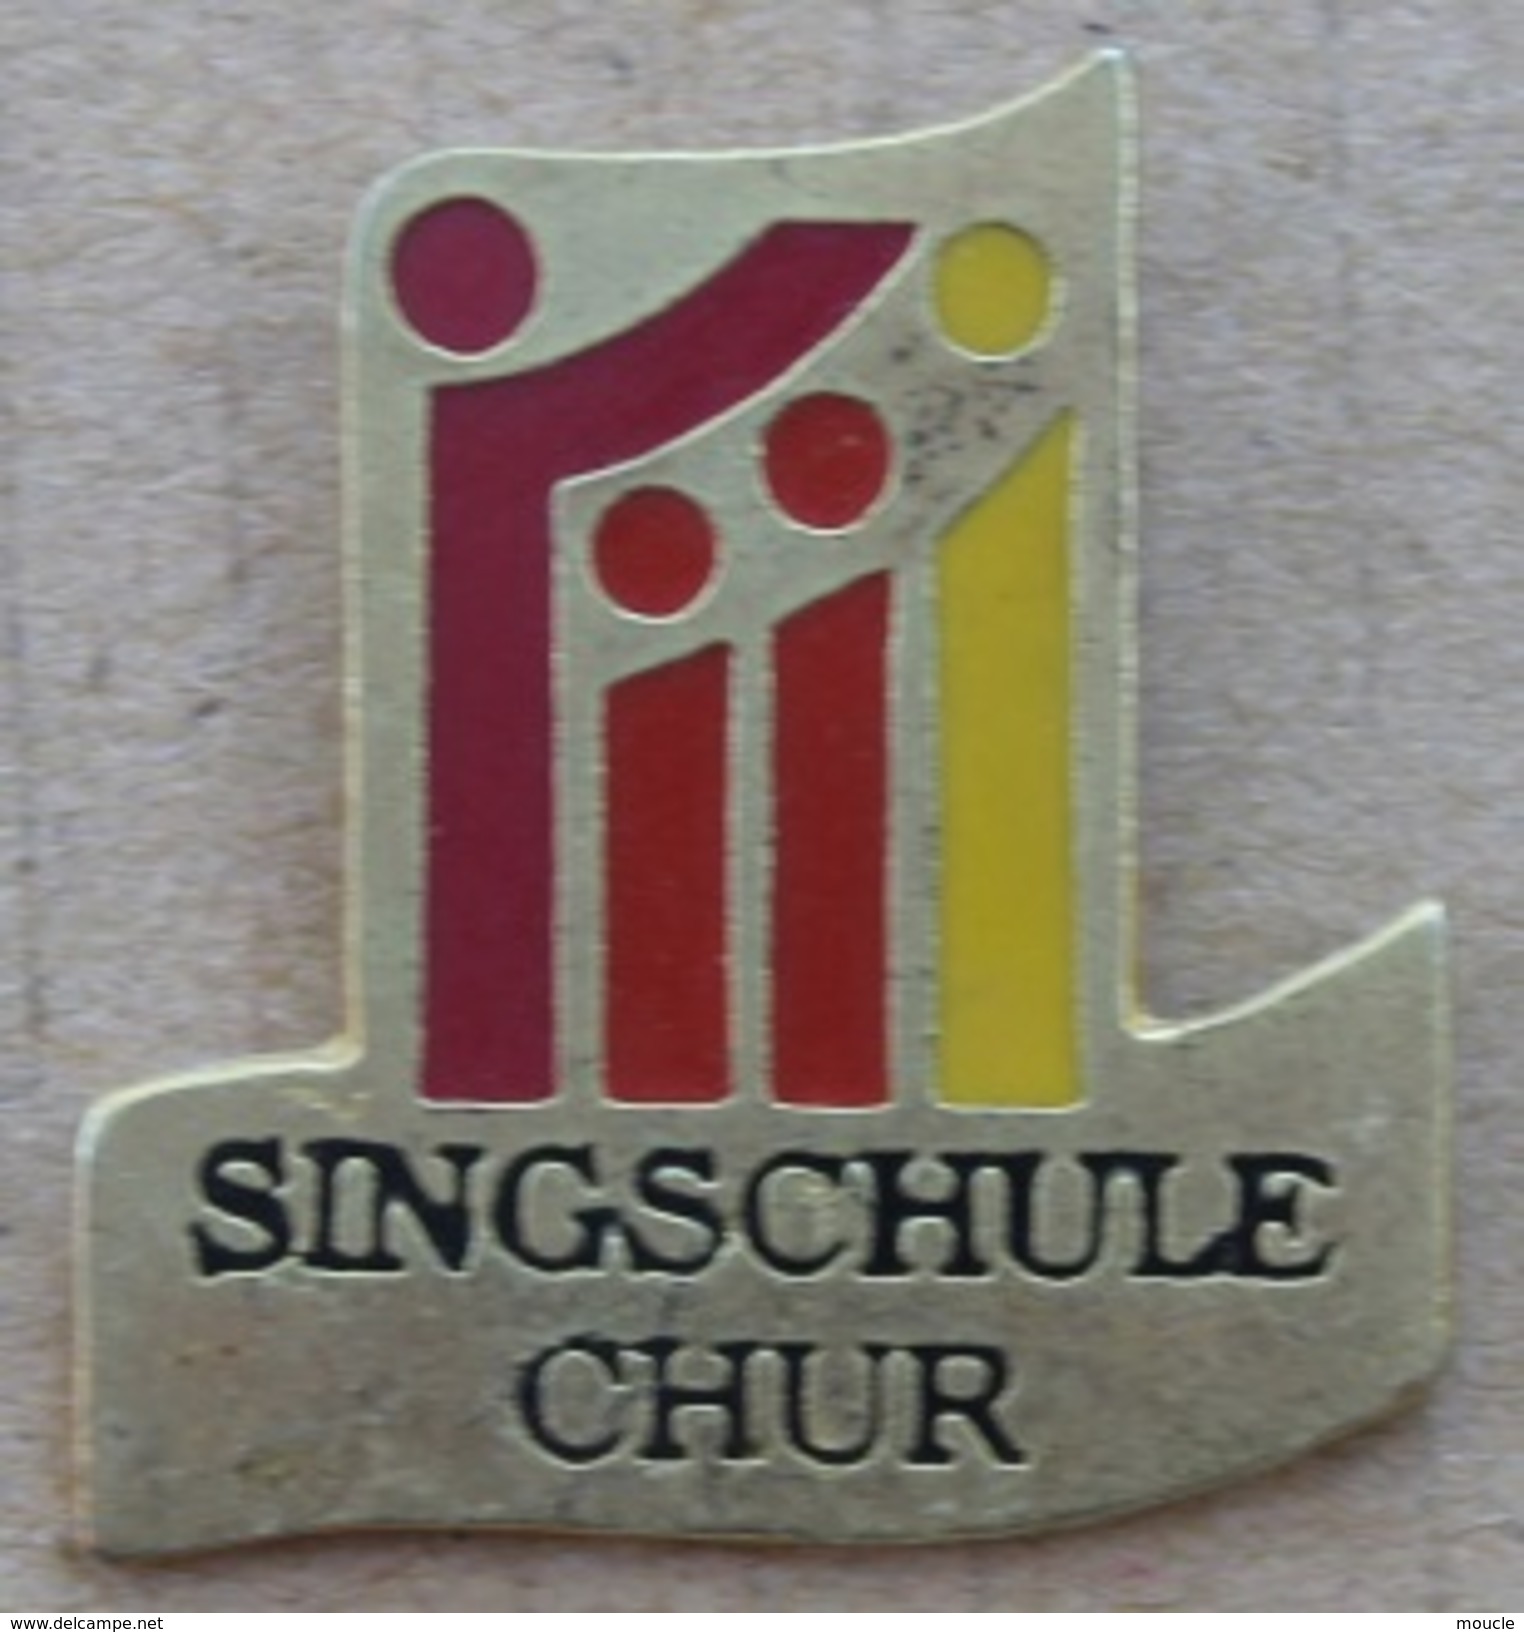 SINGSCHULE CHUR - ECOLE DE CHANTS - COIRE - CANTON DES GRISONS - SUISSE - SCHWEIZ  -   (18) - Music